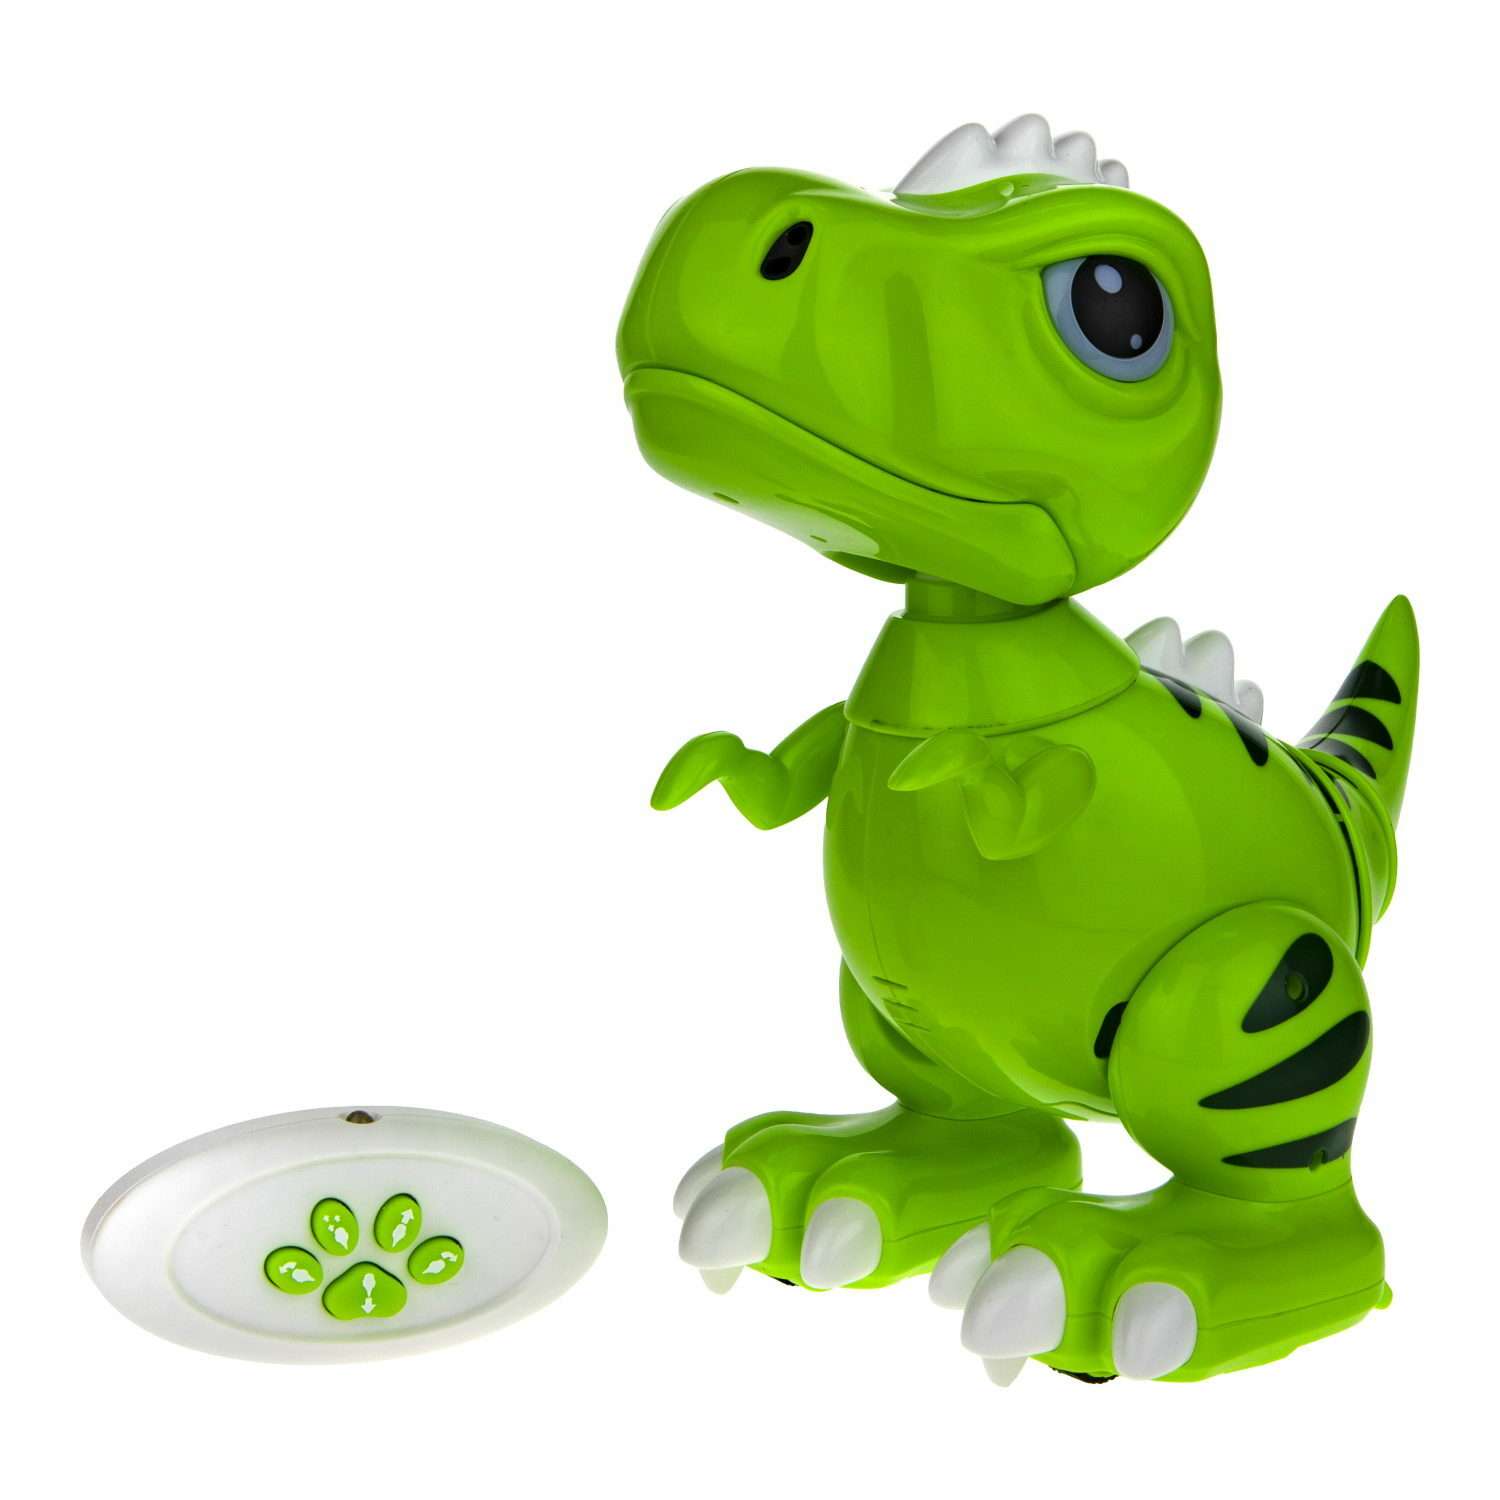 Интерактивная игрушка Robo Pets Динозавр Т-РЕКС зеленый на РУ со световыми звуковыми и эффектами движения - фото 3